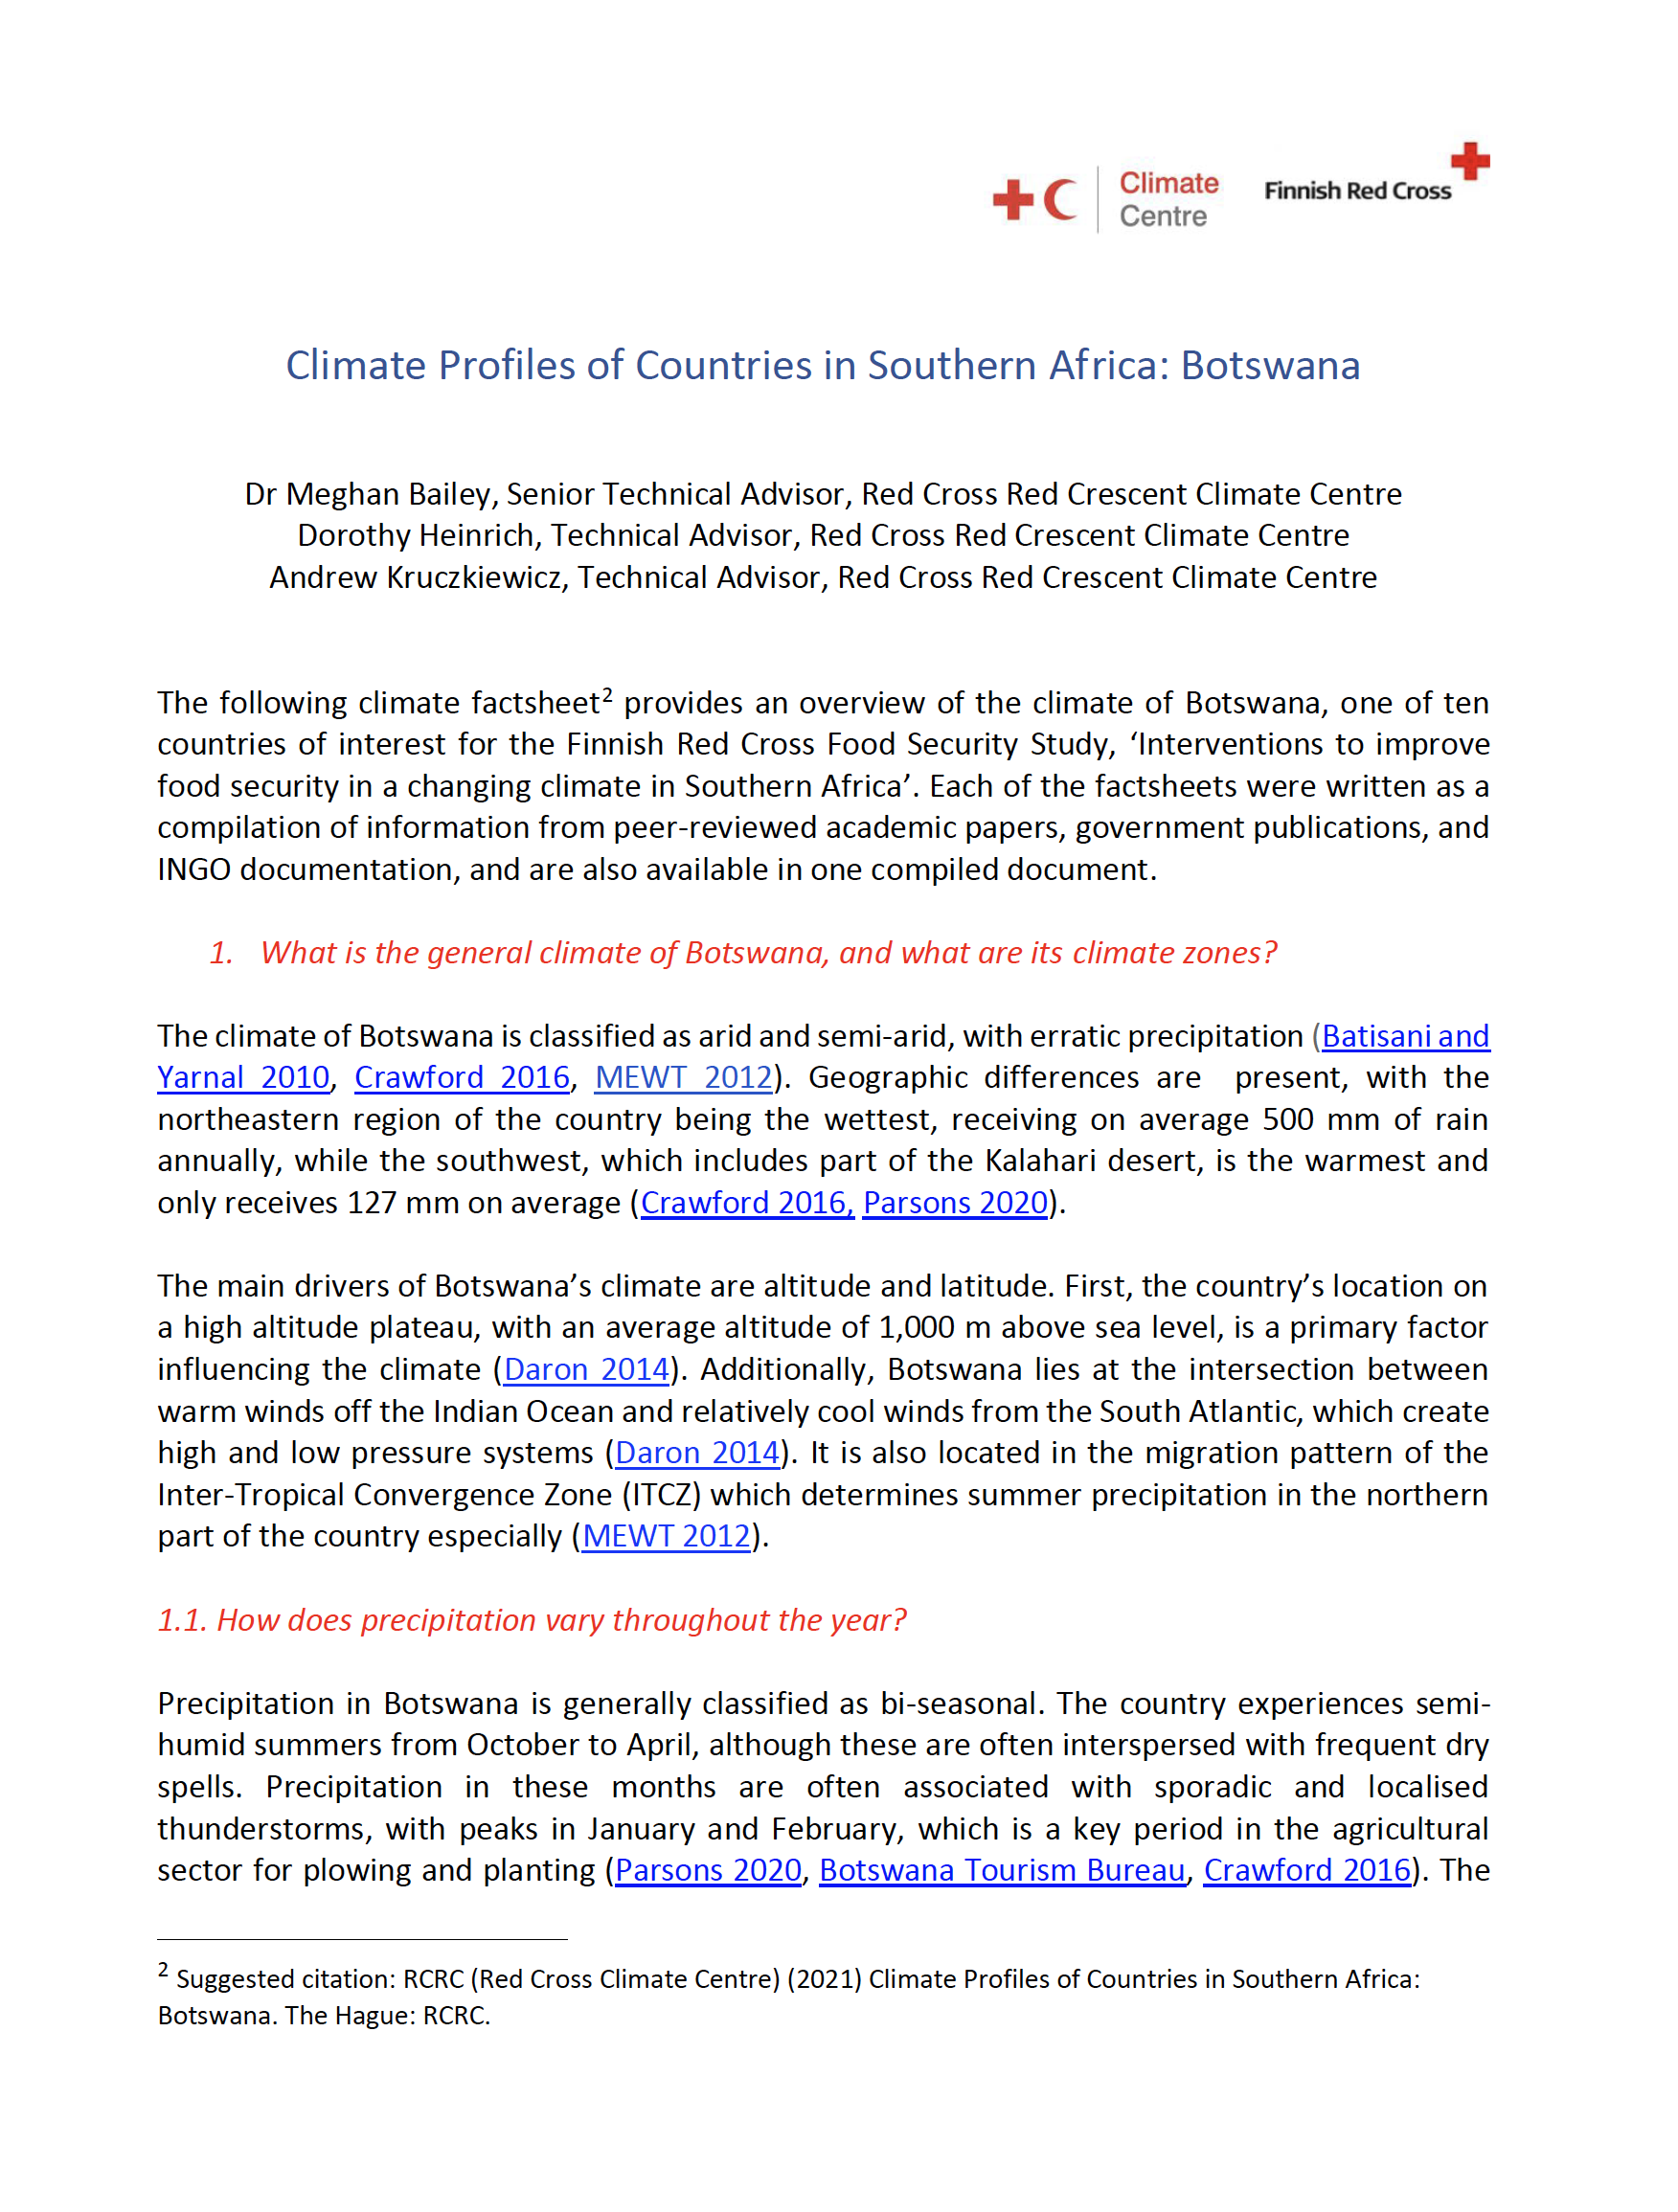 Climate Factsheet Botswana